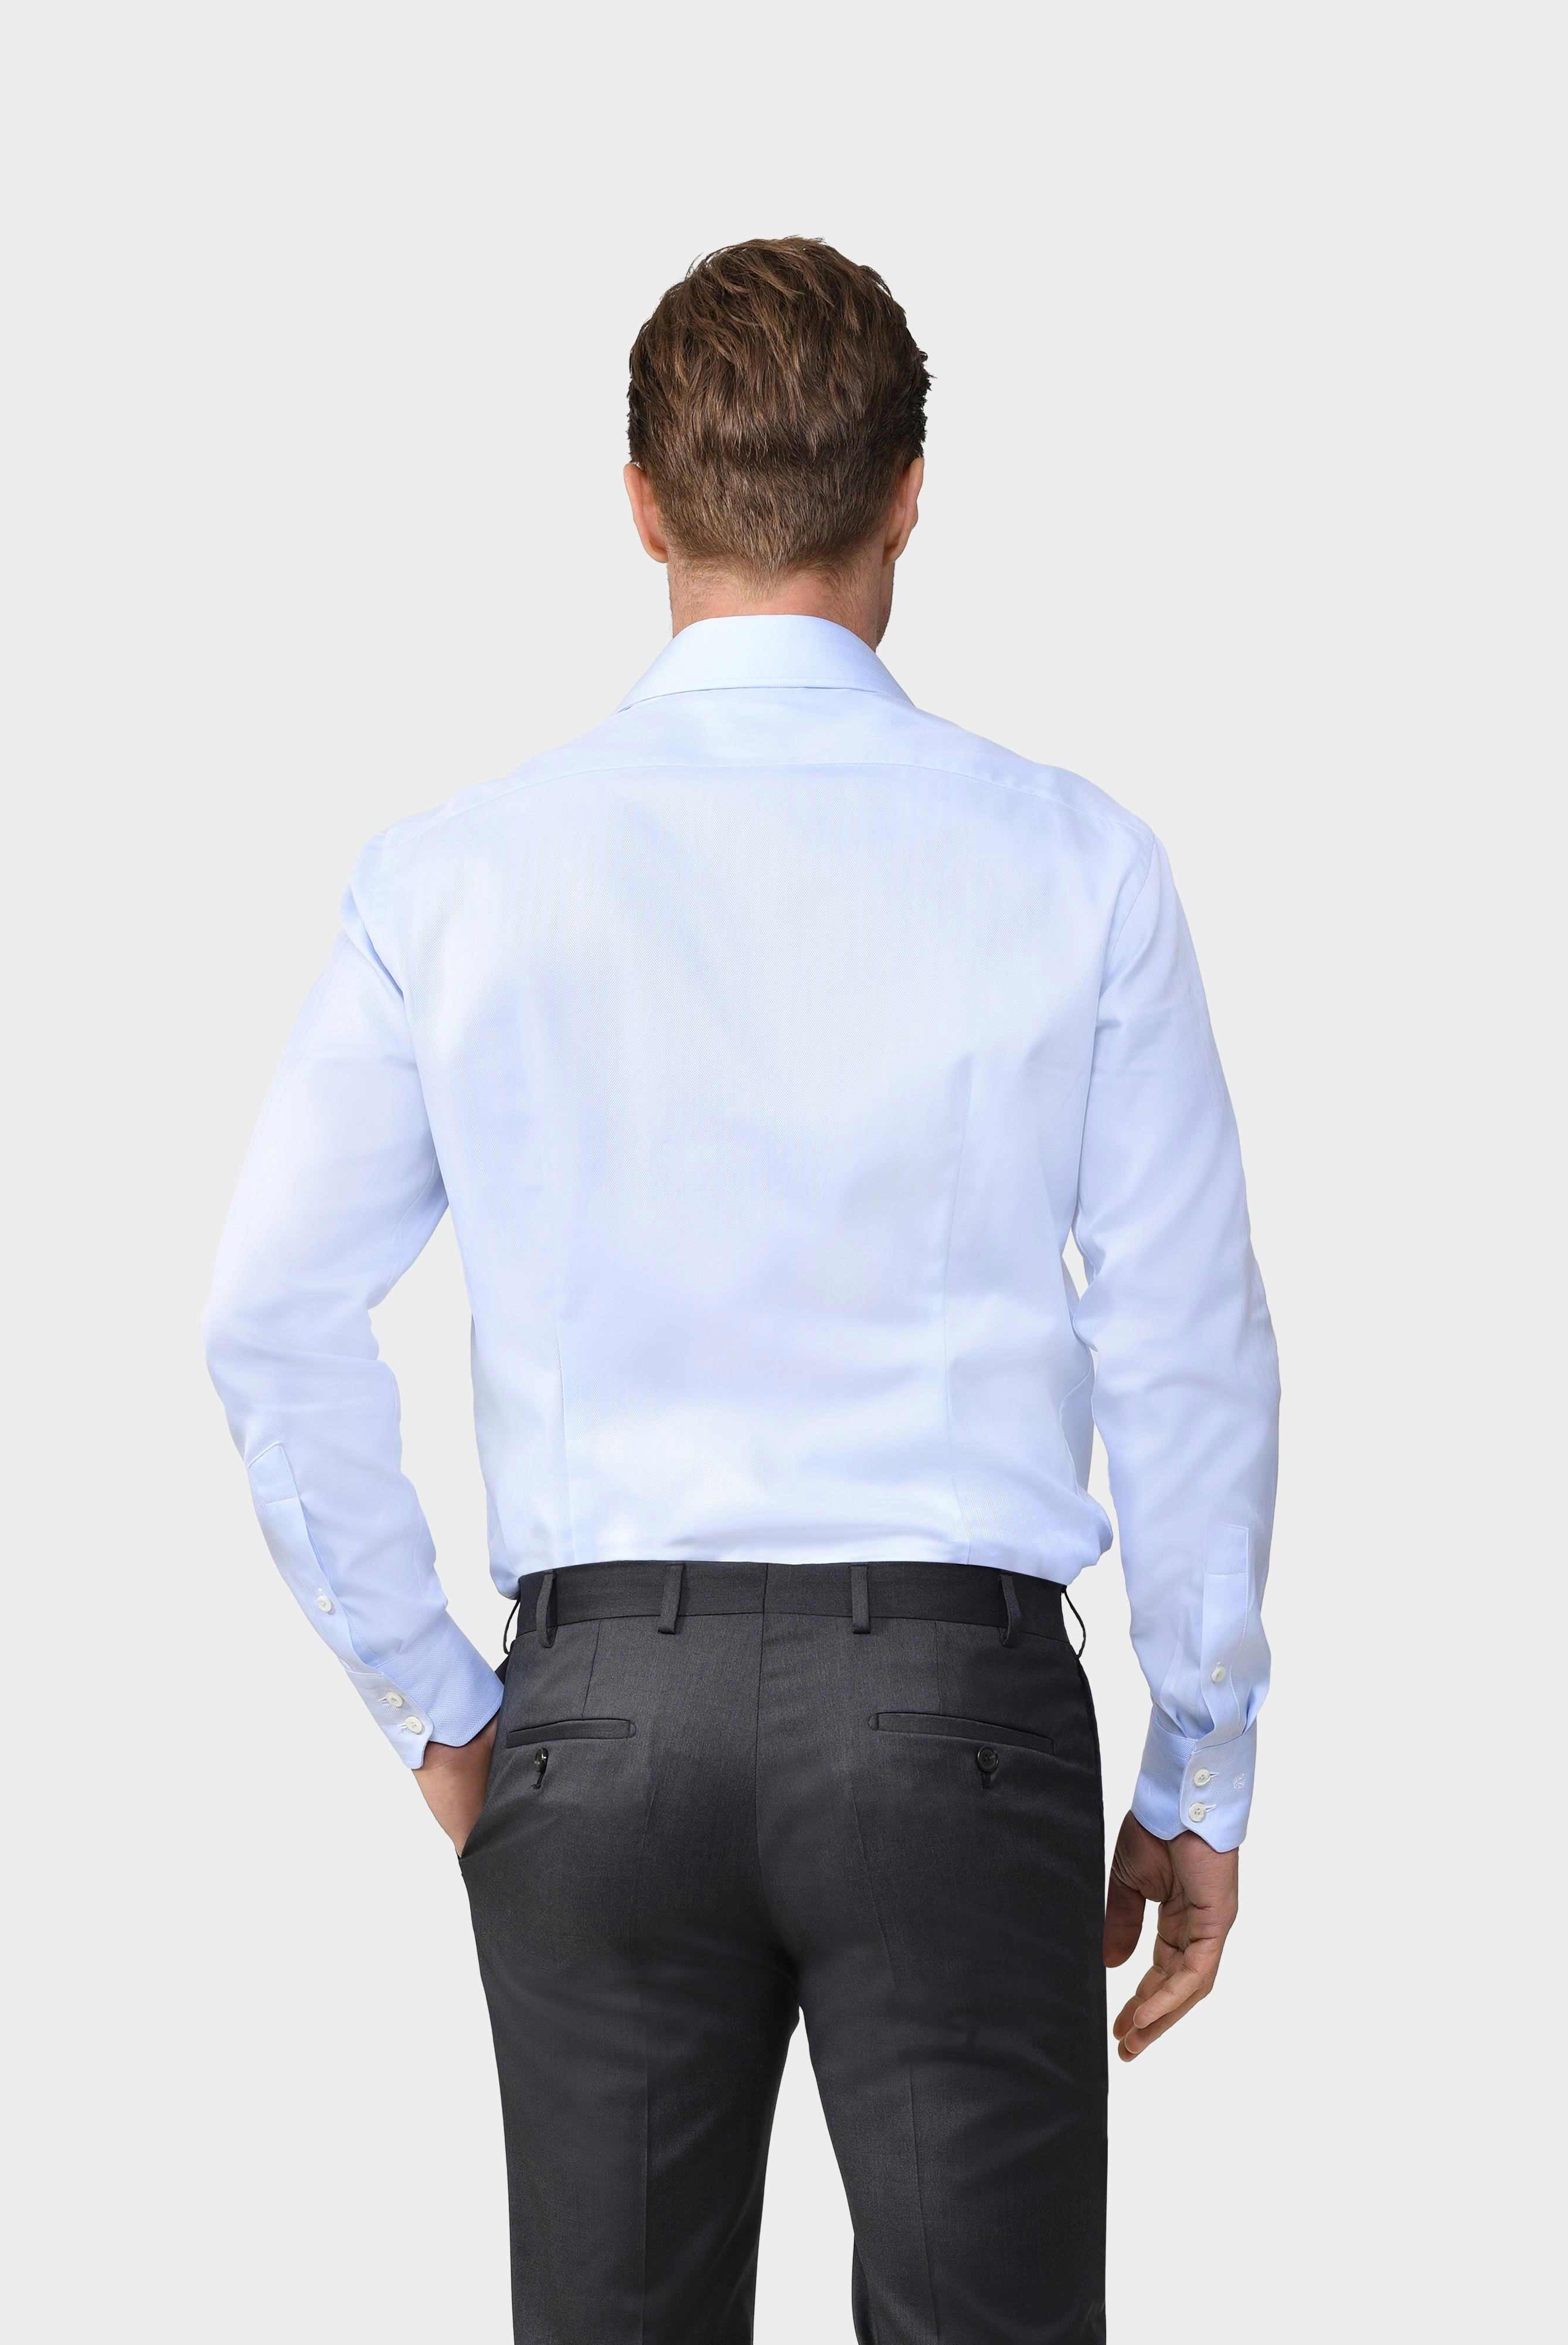 Business Hemden+Twill Hemd mit Fischgrat Tailor Fit+20.2020.AV.102501.710.37